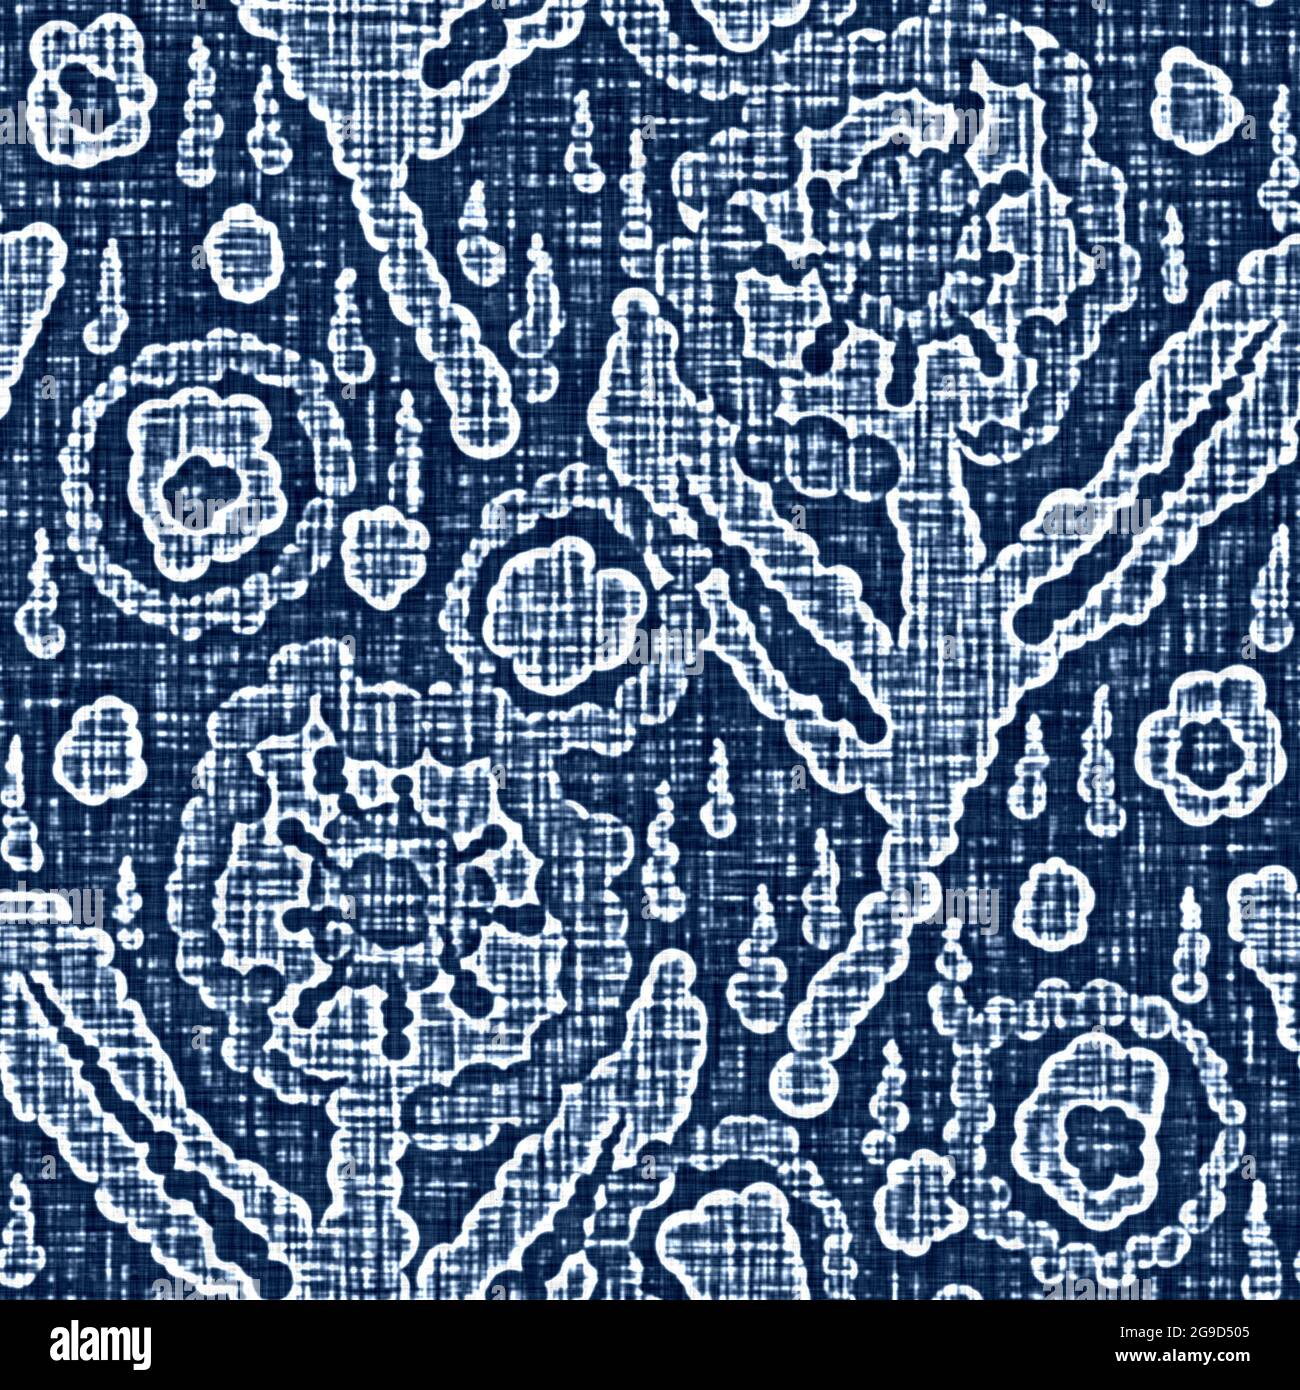 Acid wash blu effetto jean texture con decorativo lino motivo floreale sfondo. Tessuto di moda in tessuto denim senza cuciture su tutta la stampa. Foto Stock